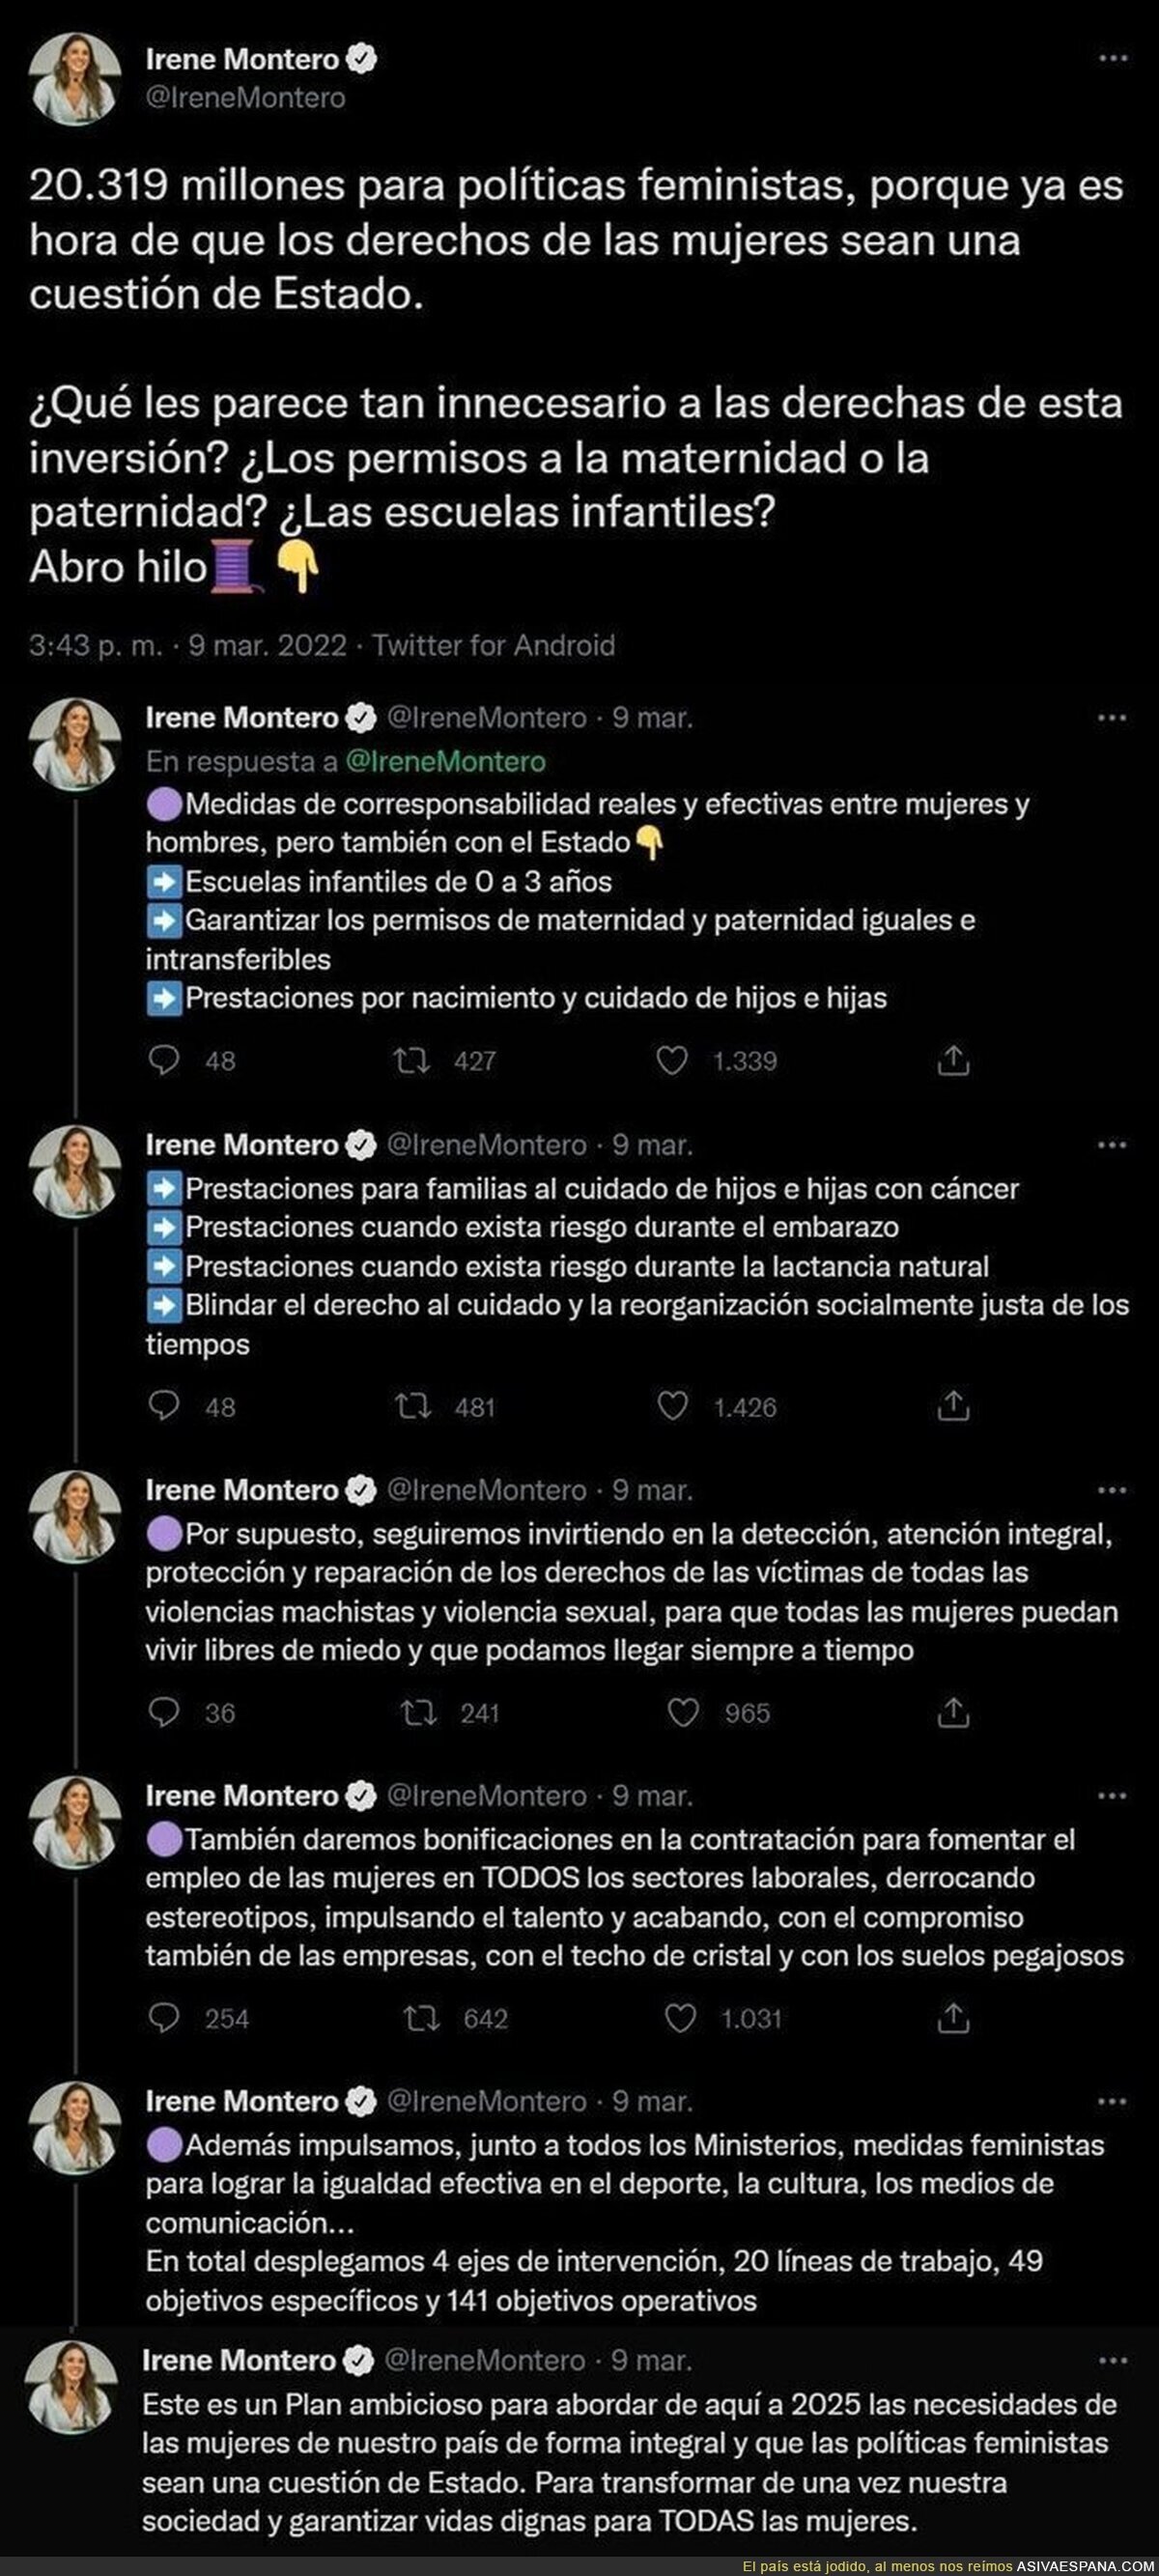 A todo esto irá dirigido los 20.319 millones de euros el ministerio de igualdad de Irene Montero por lo que la ultraderecha está contra ella